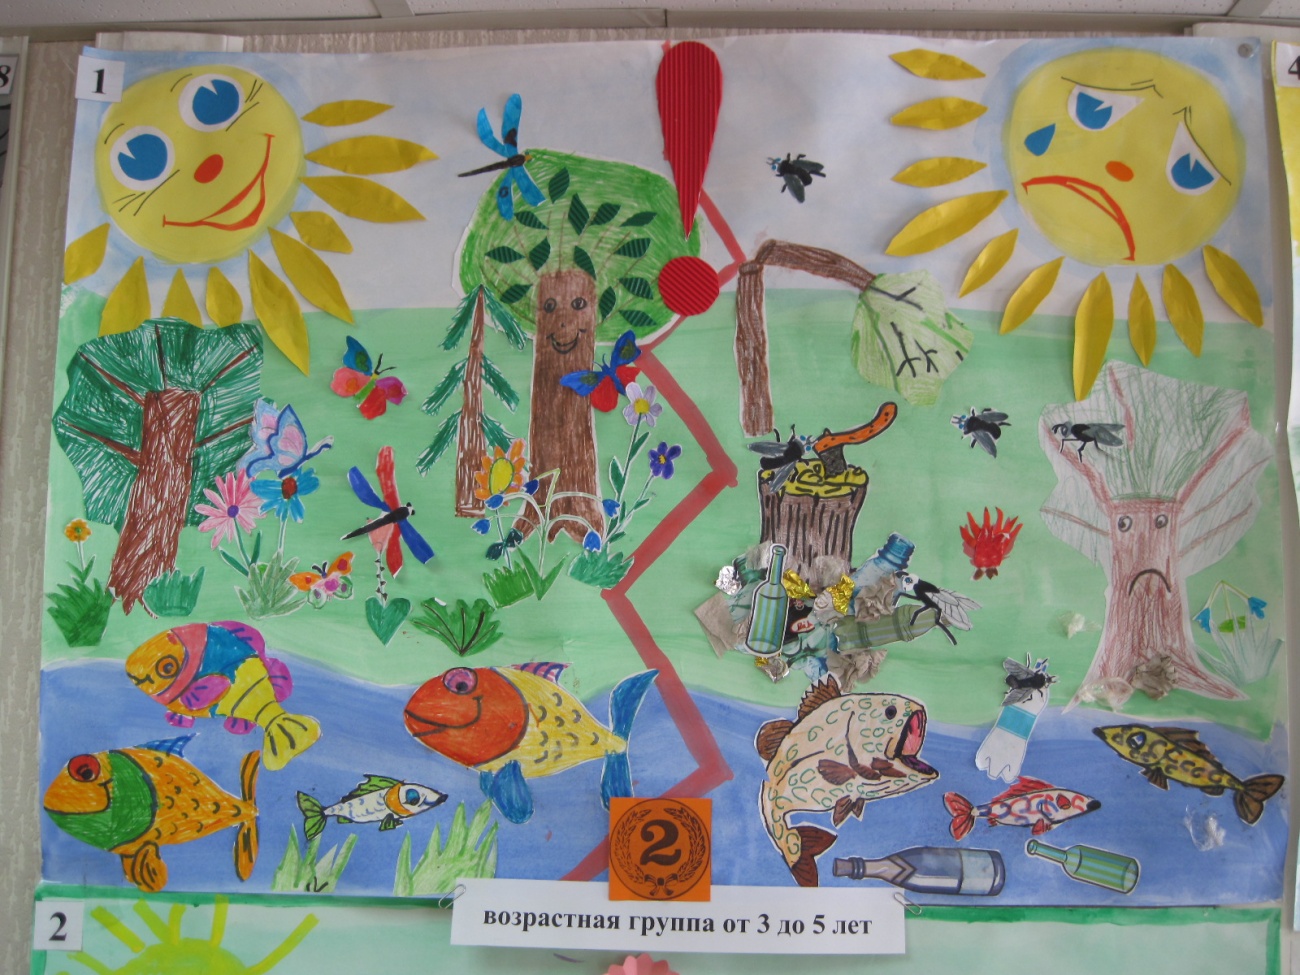 Конкурсы про экологию. Рисунок на тему экологии для детского сада. Рисунки детей на экологическую тематику. Экология детские рисунки. Конкурс рисунков на экологическую тему.